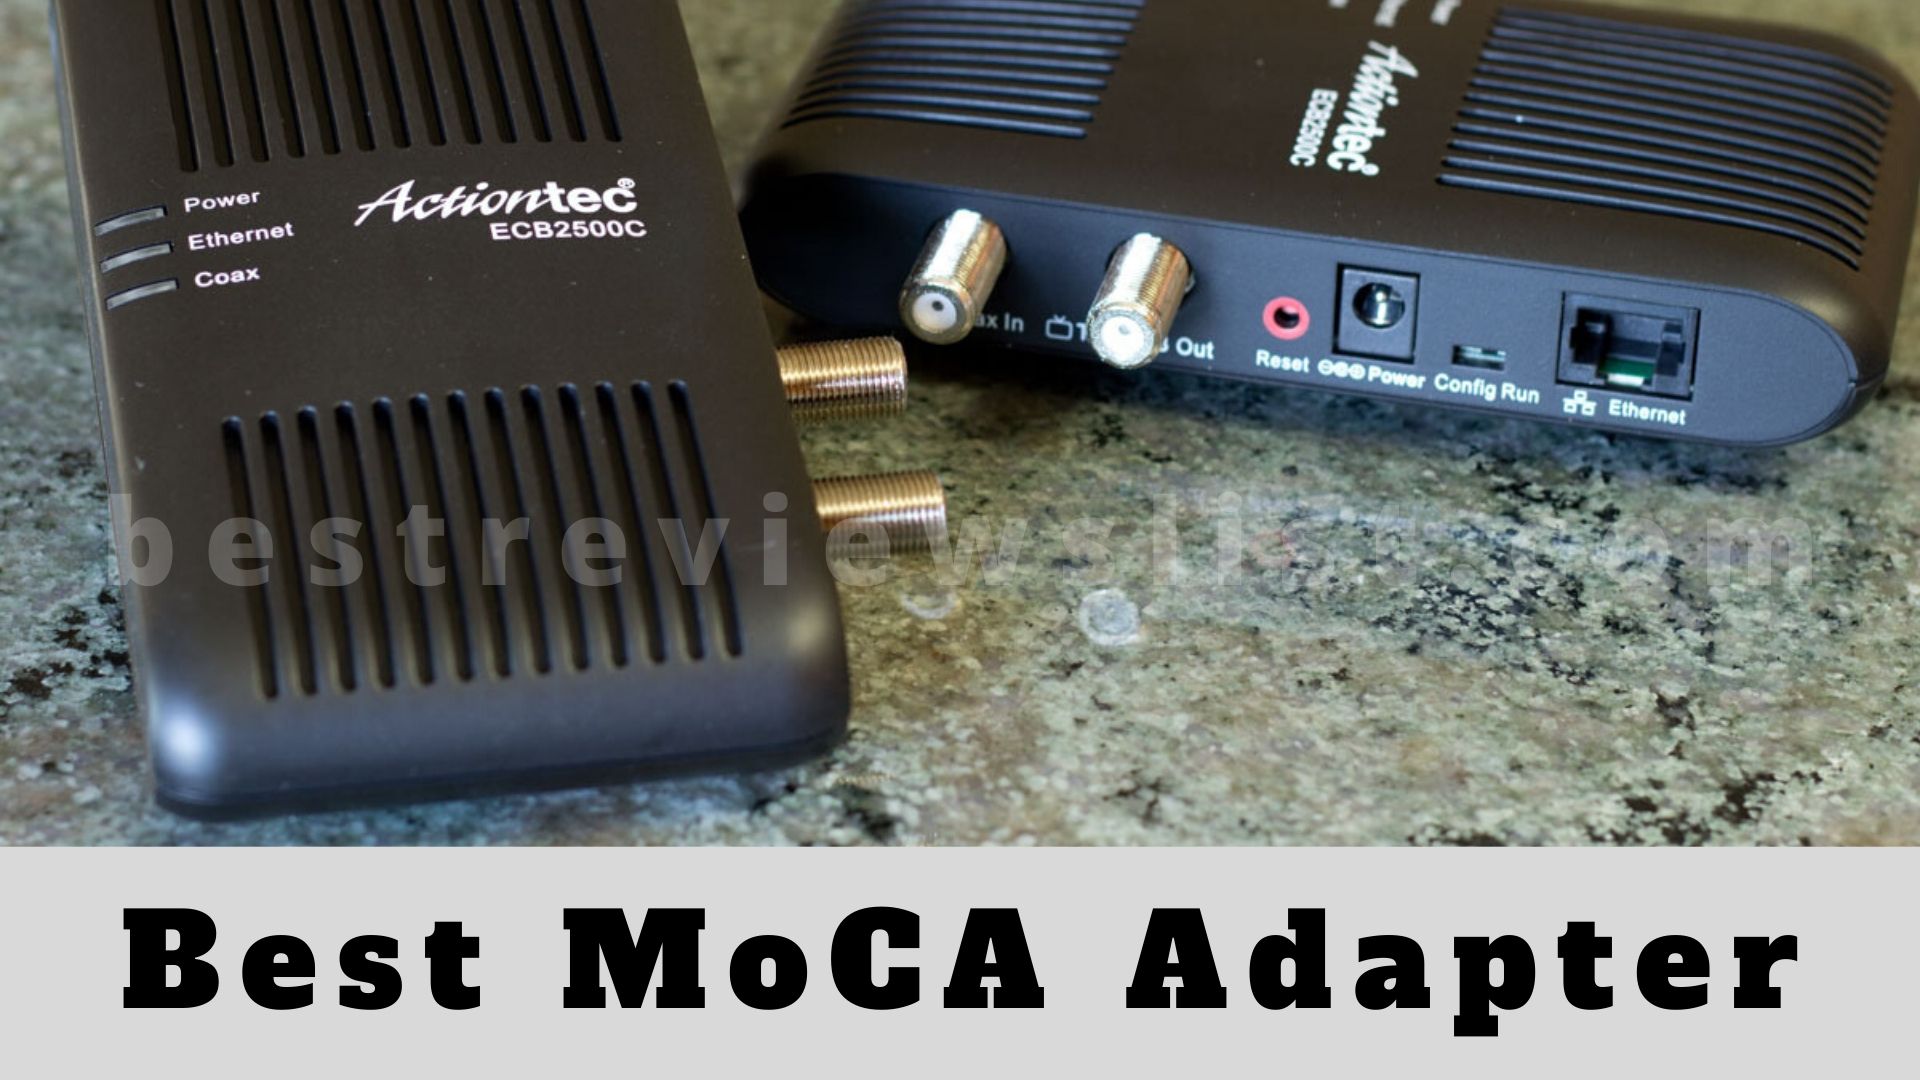 Best MoCA Adapter